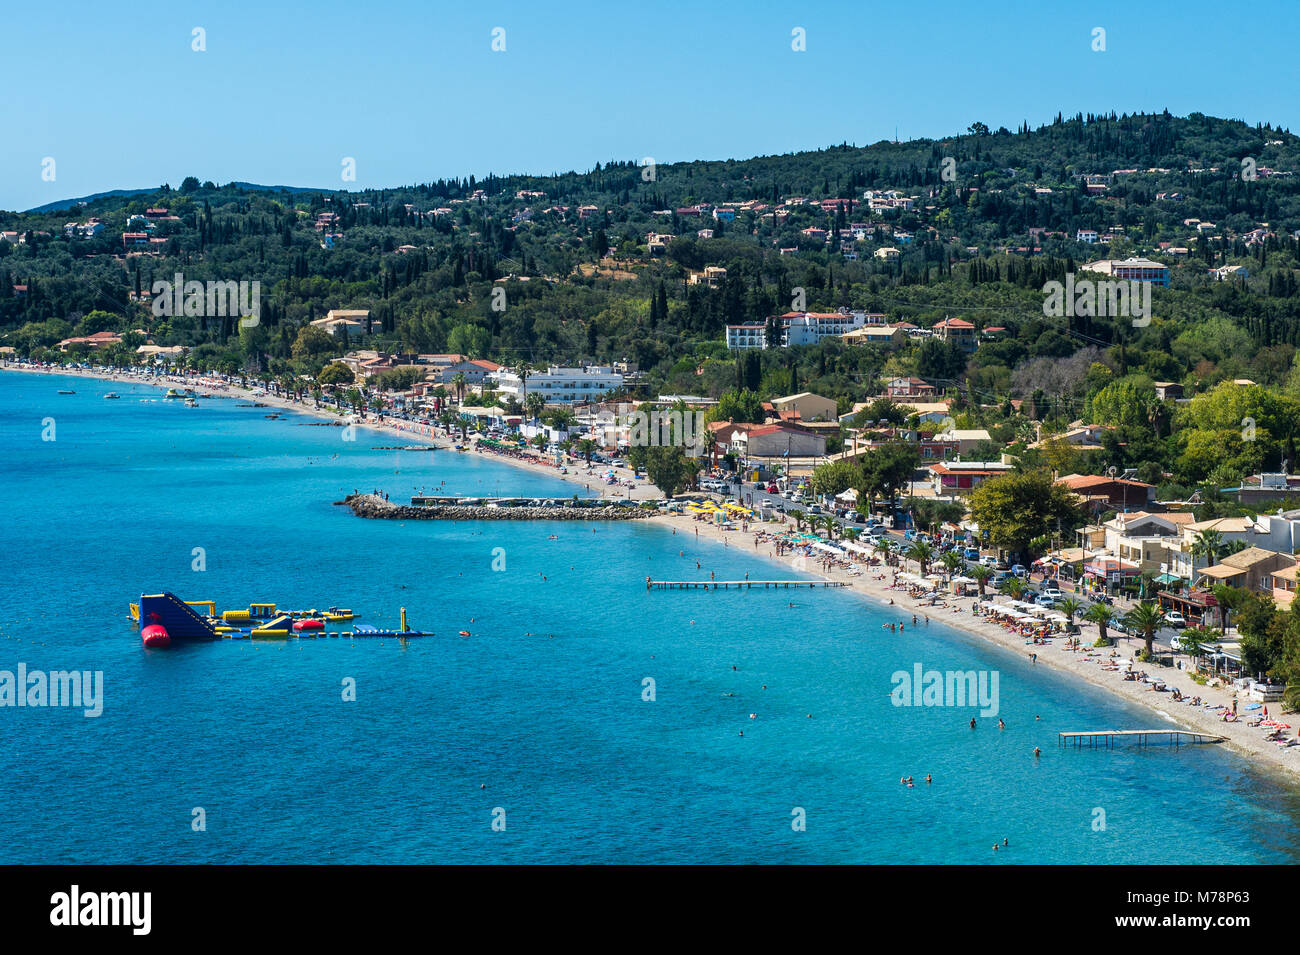 La plage de Corfu Ipsos, Corfou, îles Ioniennes, îles grecques, Grèce, Europe Banque D'Images